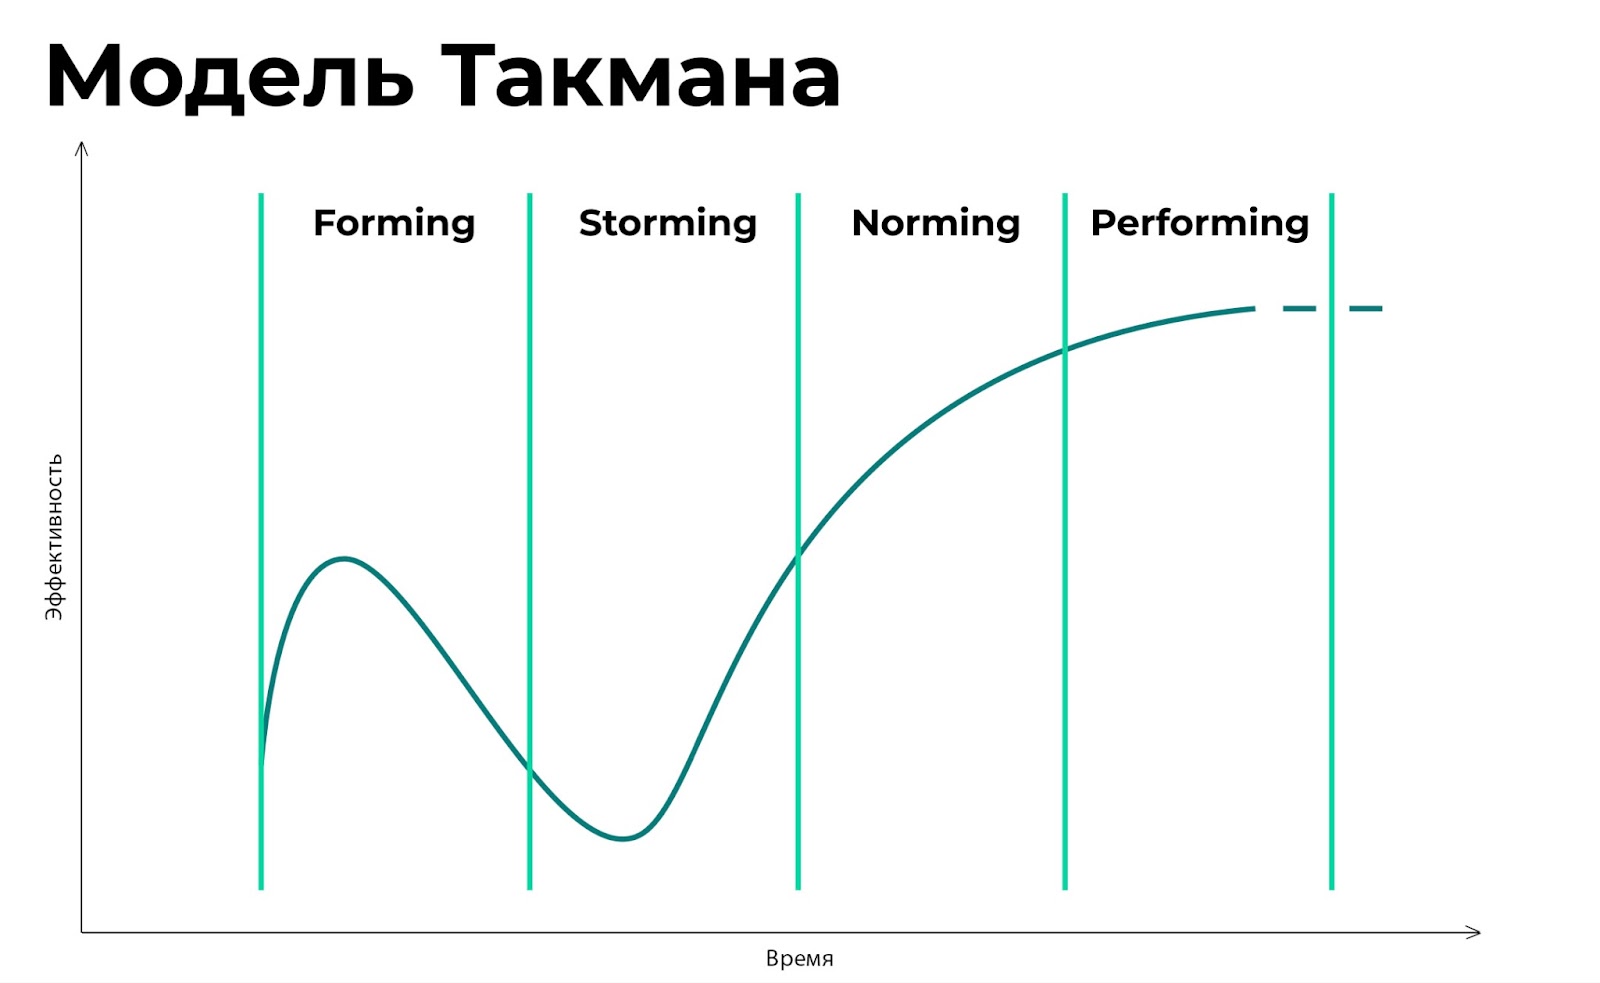 Модель Такмана — последовательность этапов, которые проходят команды на пути к высокой производительности. 